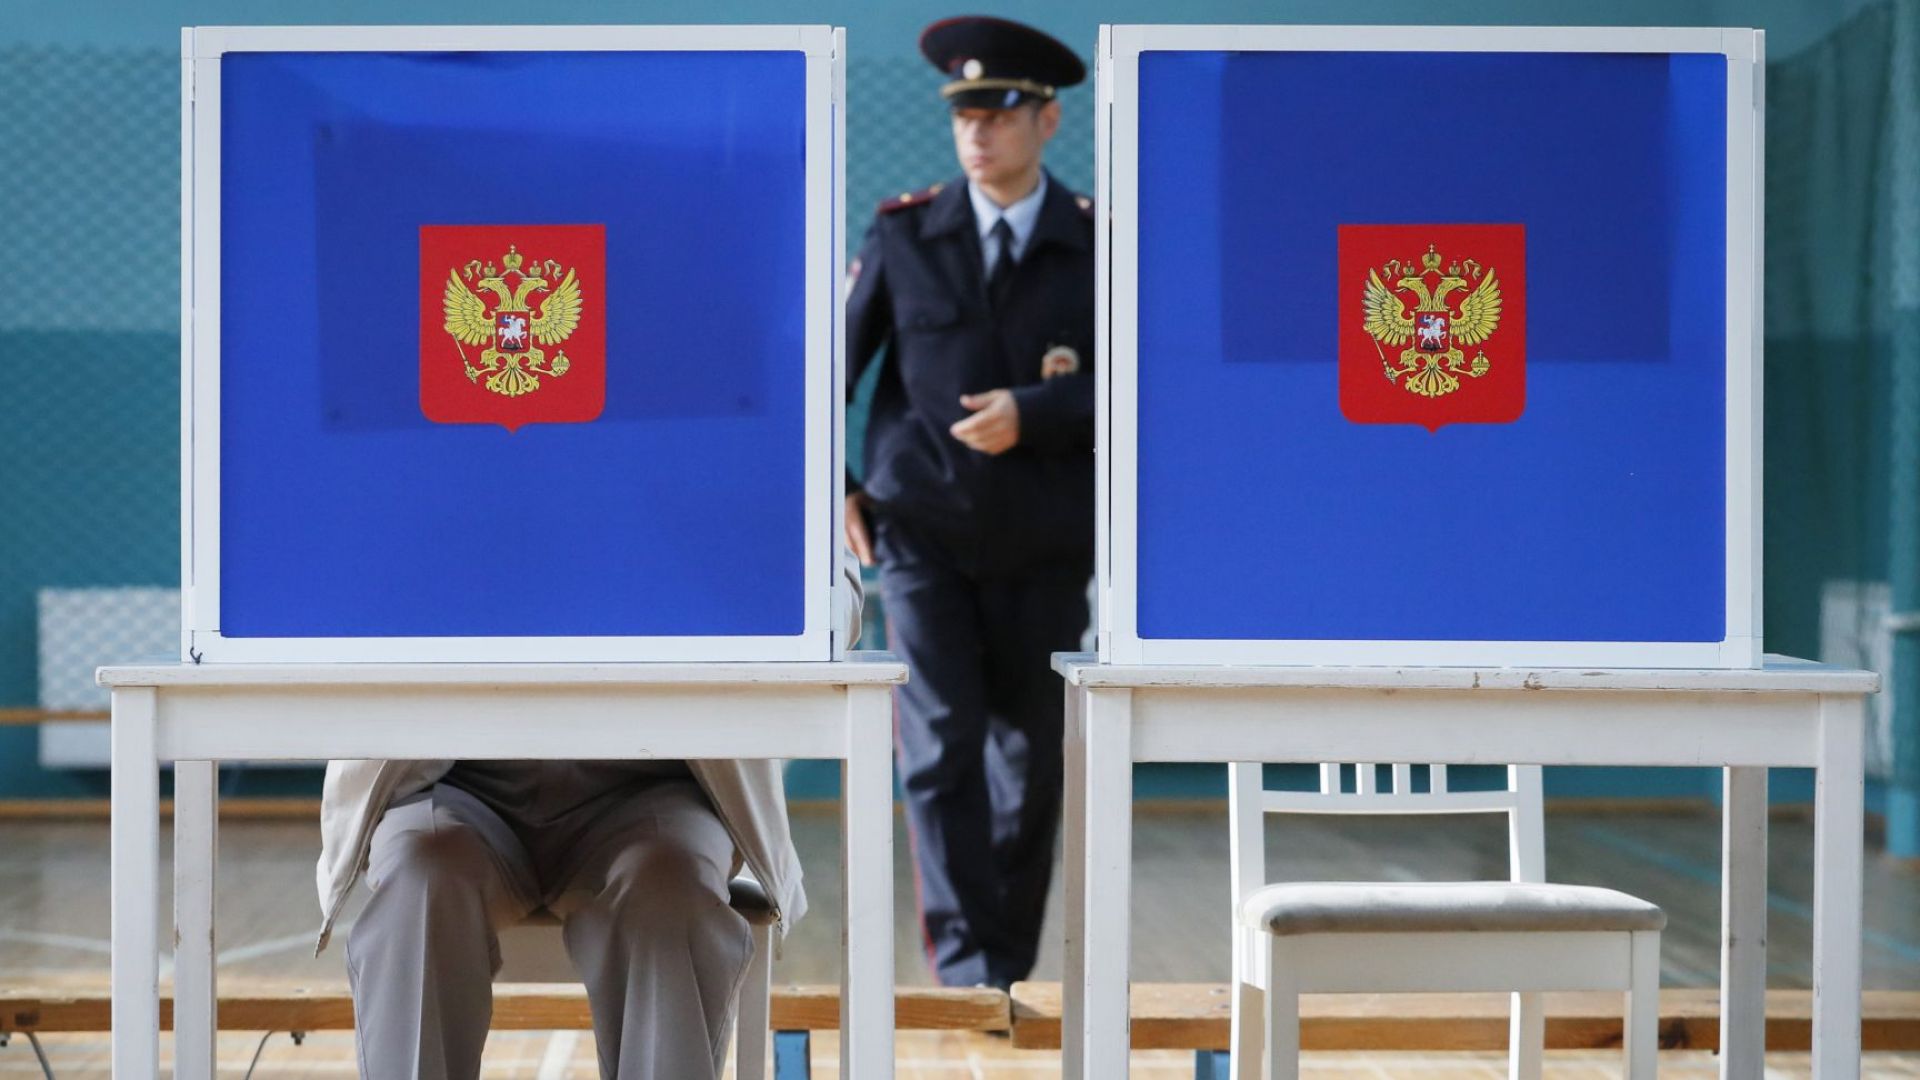 Партията Единна Русия остава водеща политическа сила в страната пише